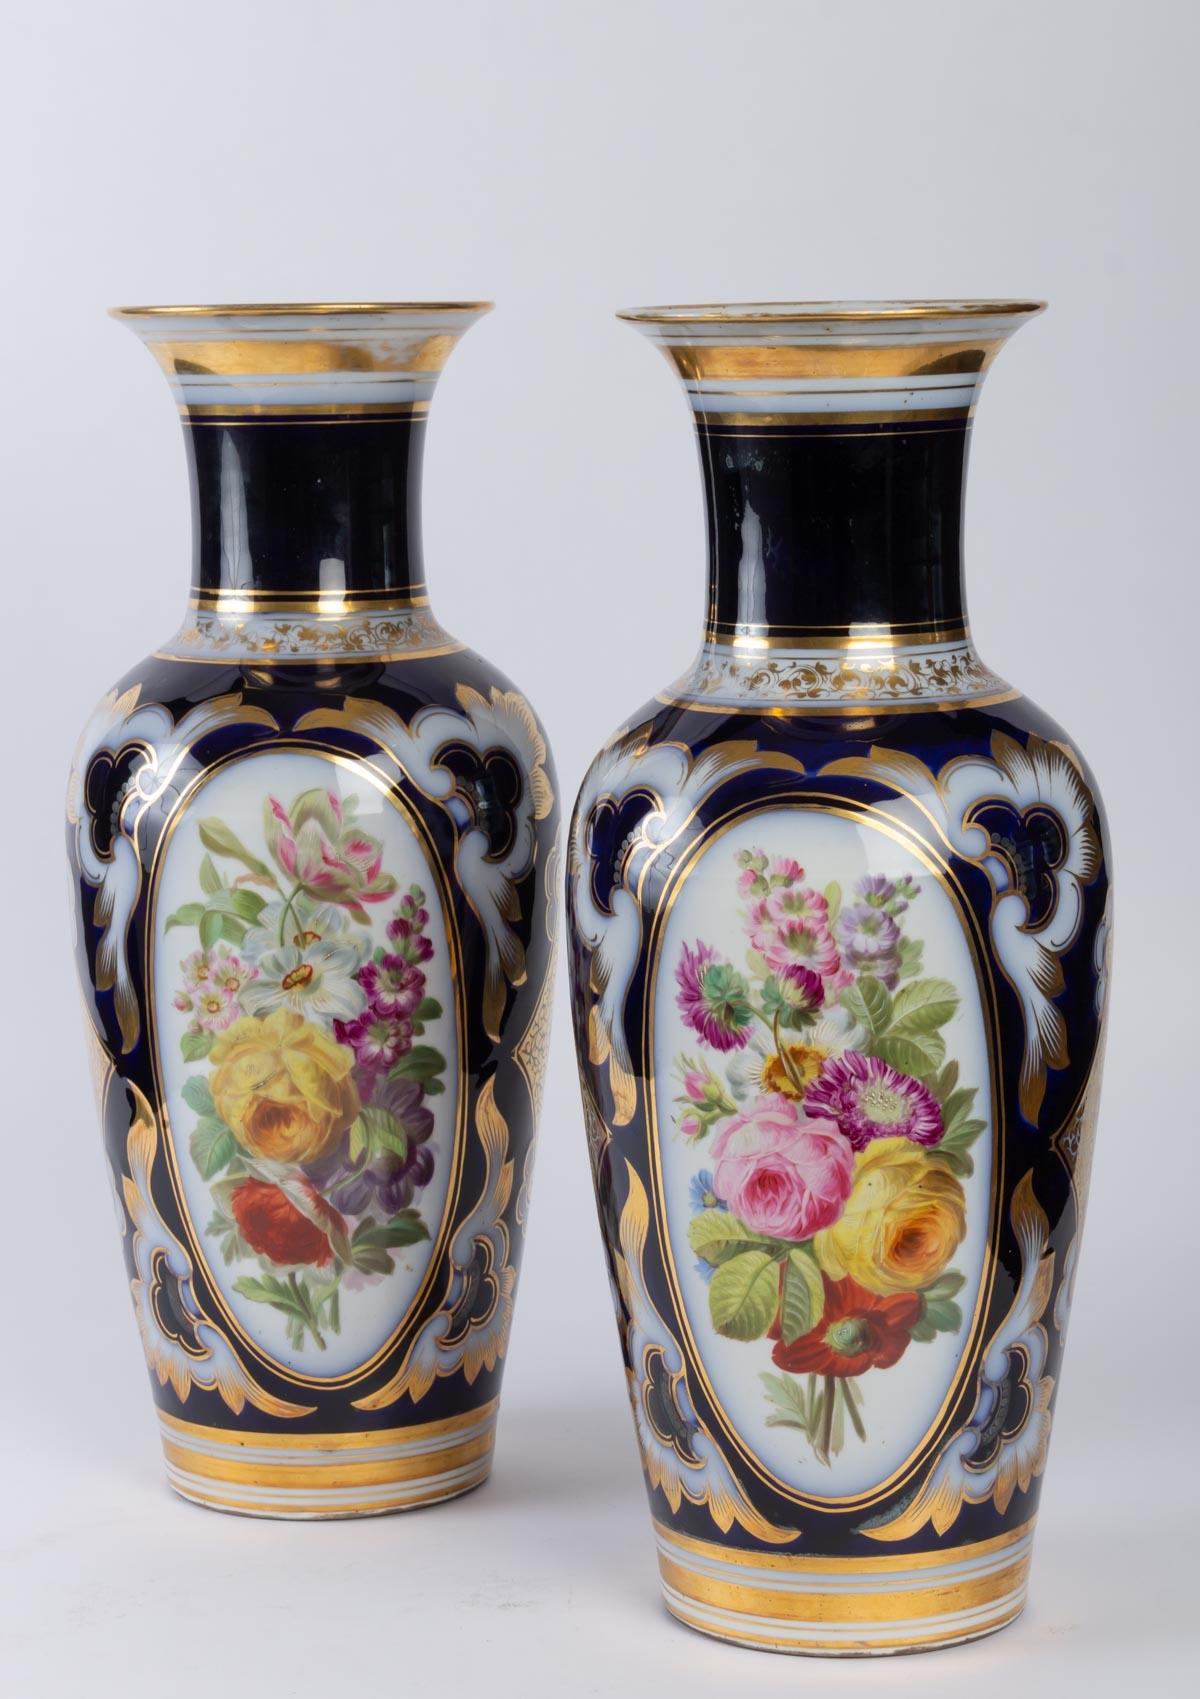 Pair of Paris porcelain vases
Late 19th century period, Napoleon III
Height: 46cm